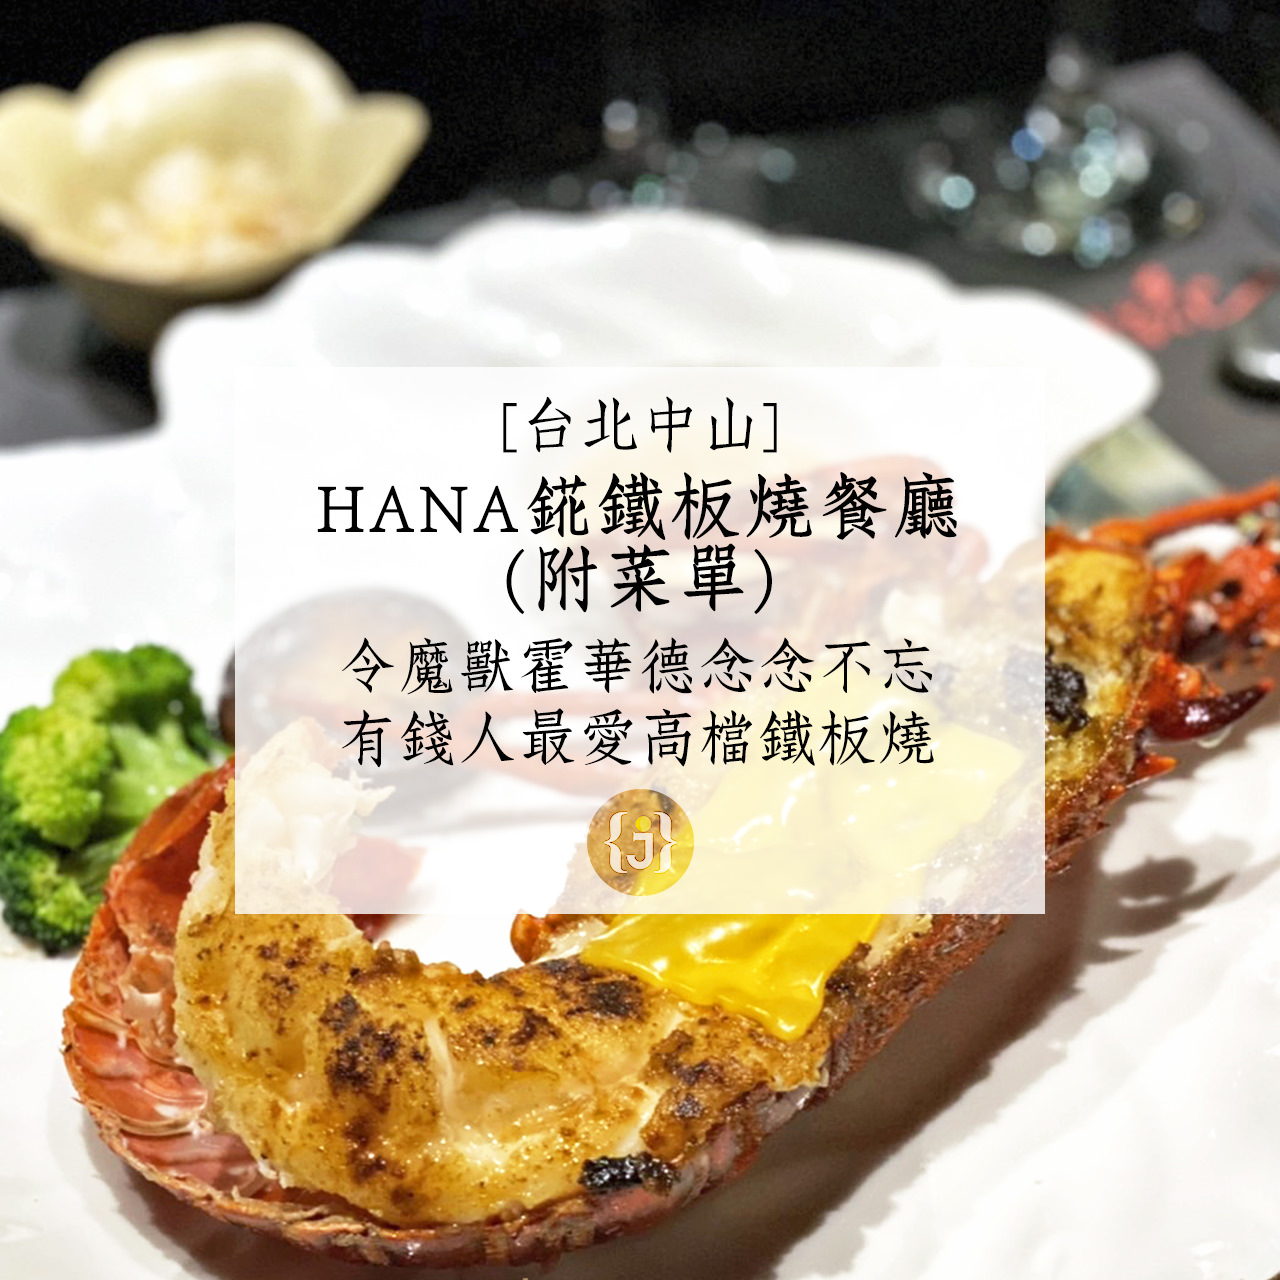 【台北中山】HANA錵鐵板燒餐廳附菜單令魔獸霍華德念念不忘 有錢人最愛低調鐵板燒